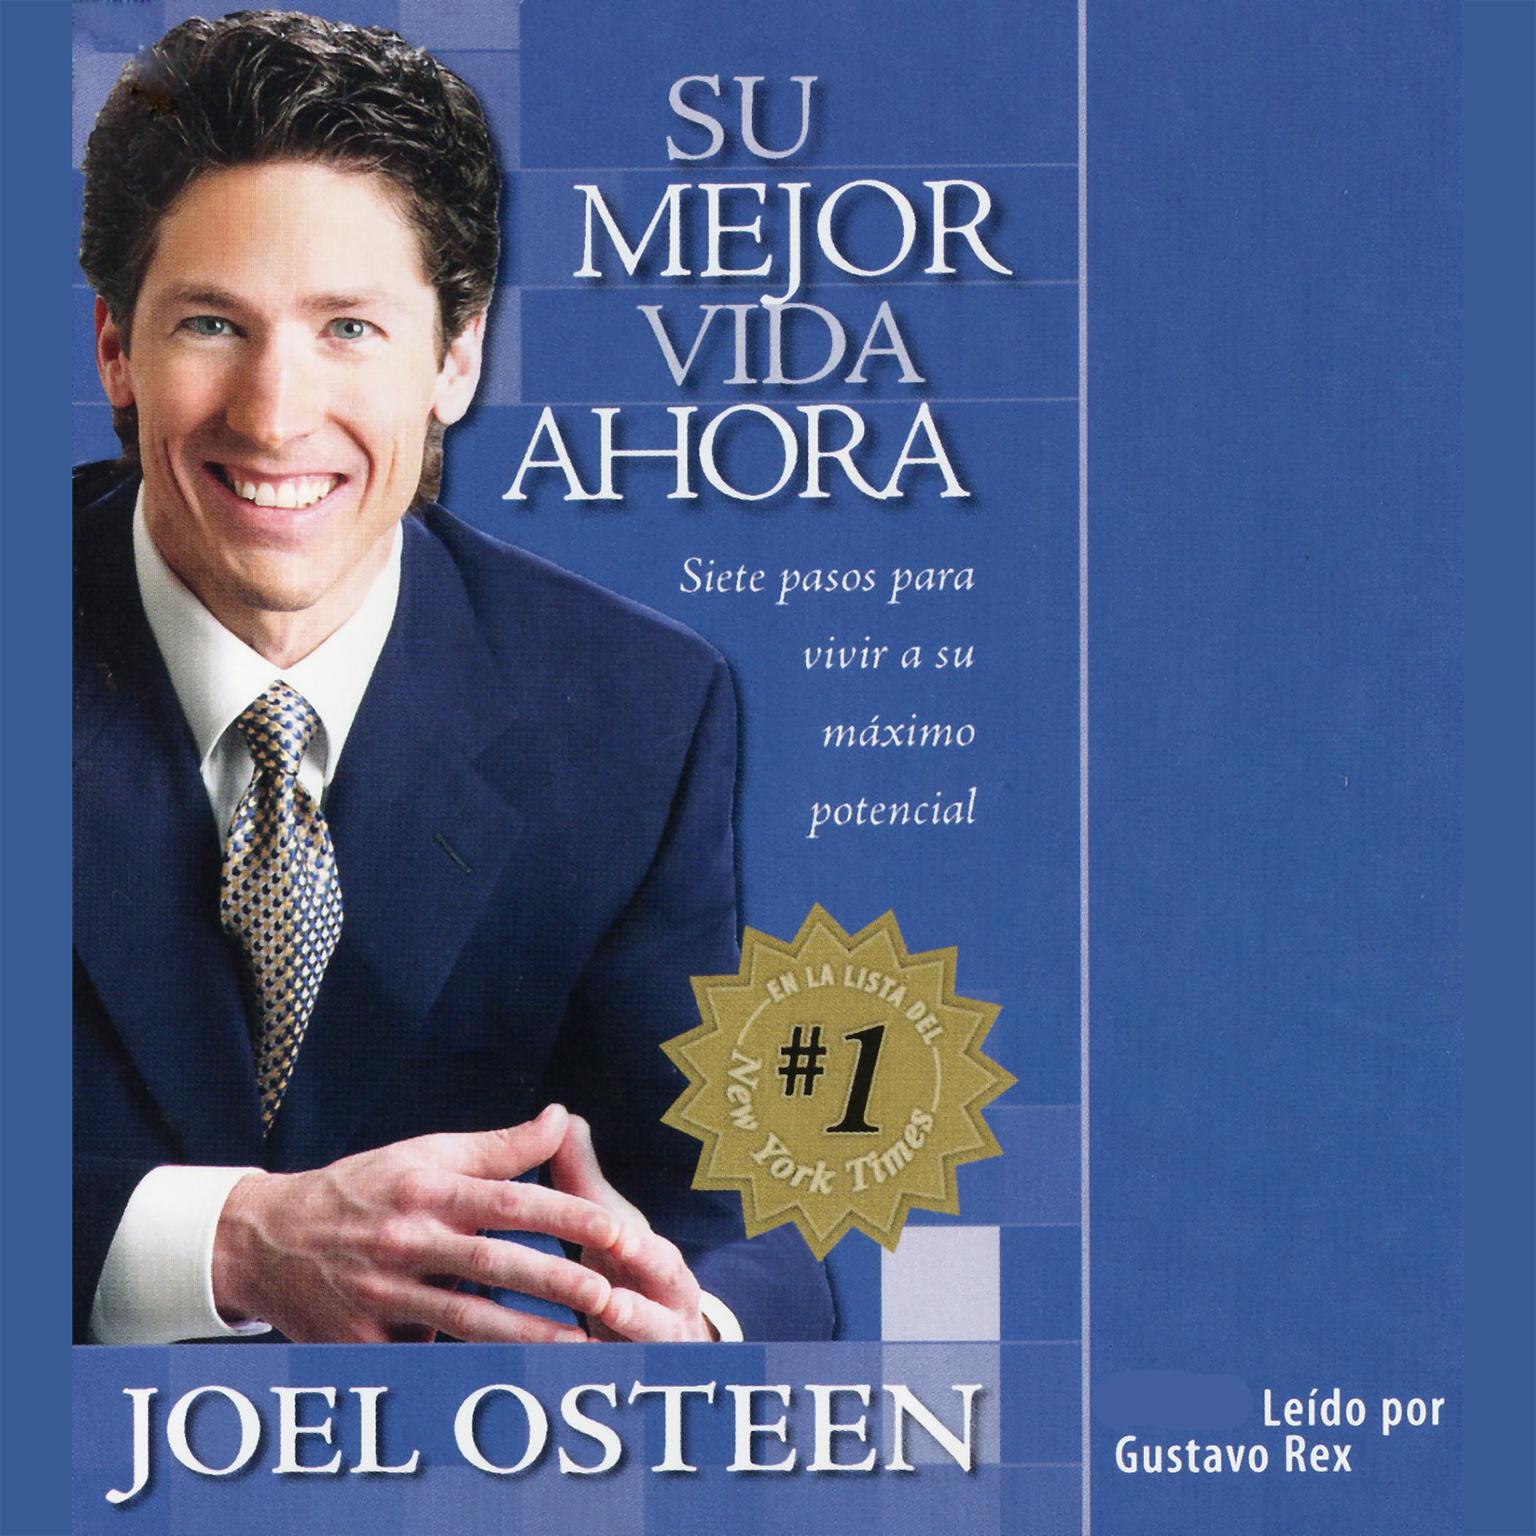 Su Mejor Vida Ahora (Abridged): Siete Etapas Vias Camimos para Vivir al Maximo Potencial Audiobook, by Joel Osteen